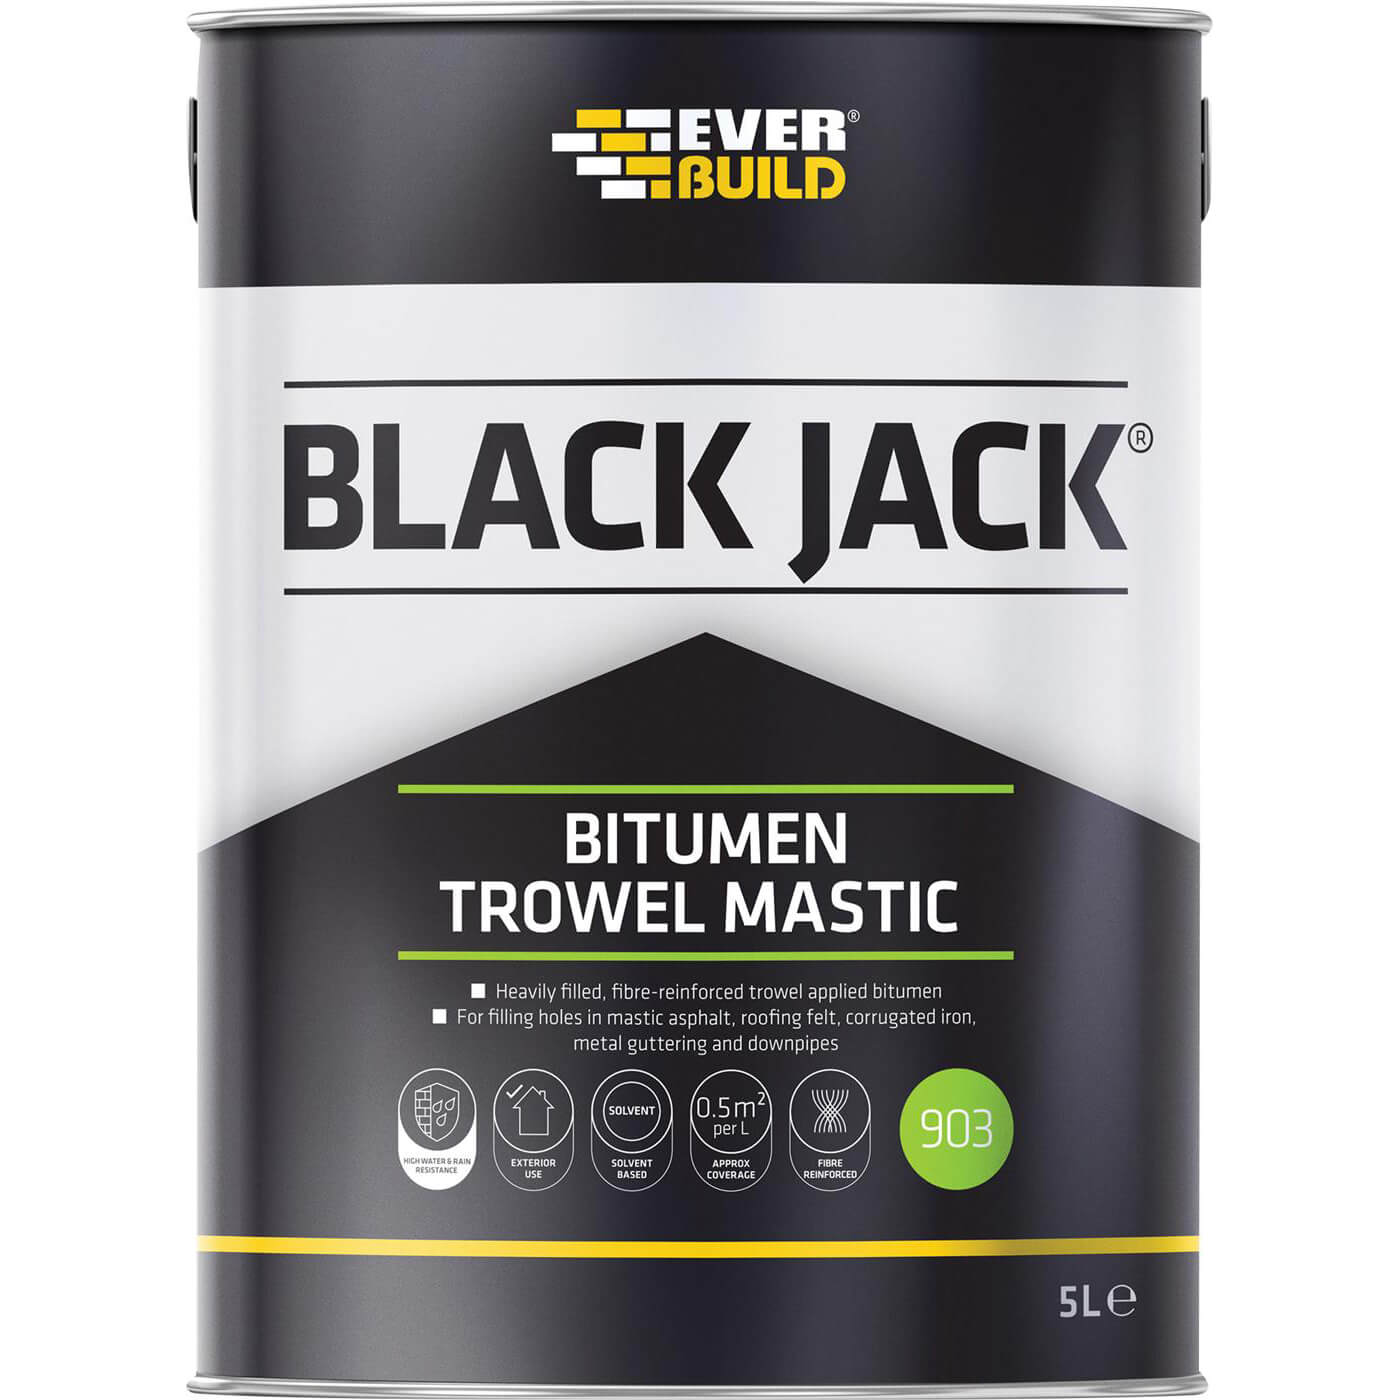 Image of Everbuild Black Jack 903 Bitumen Trowel Mastic 5l